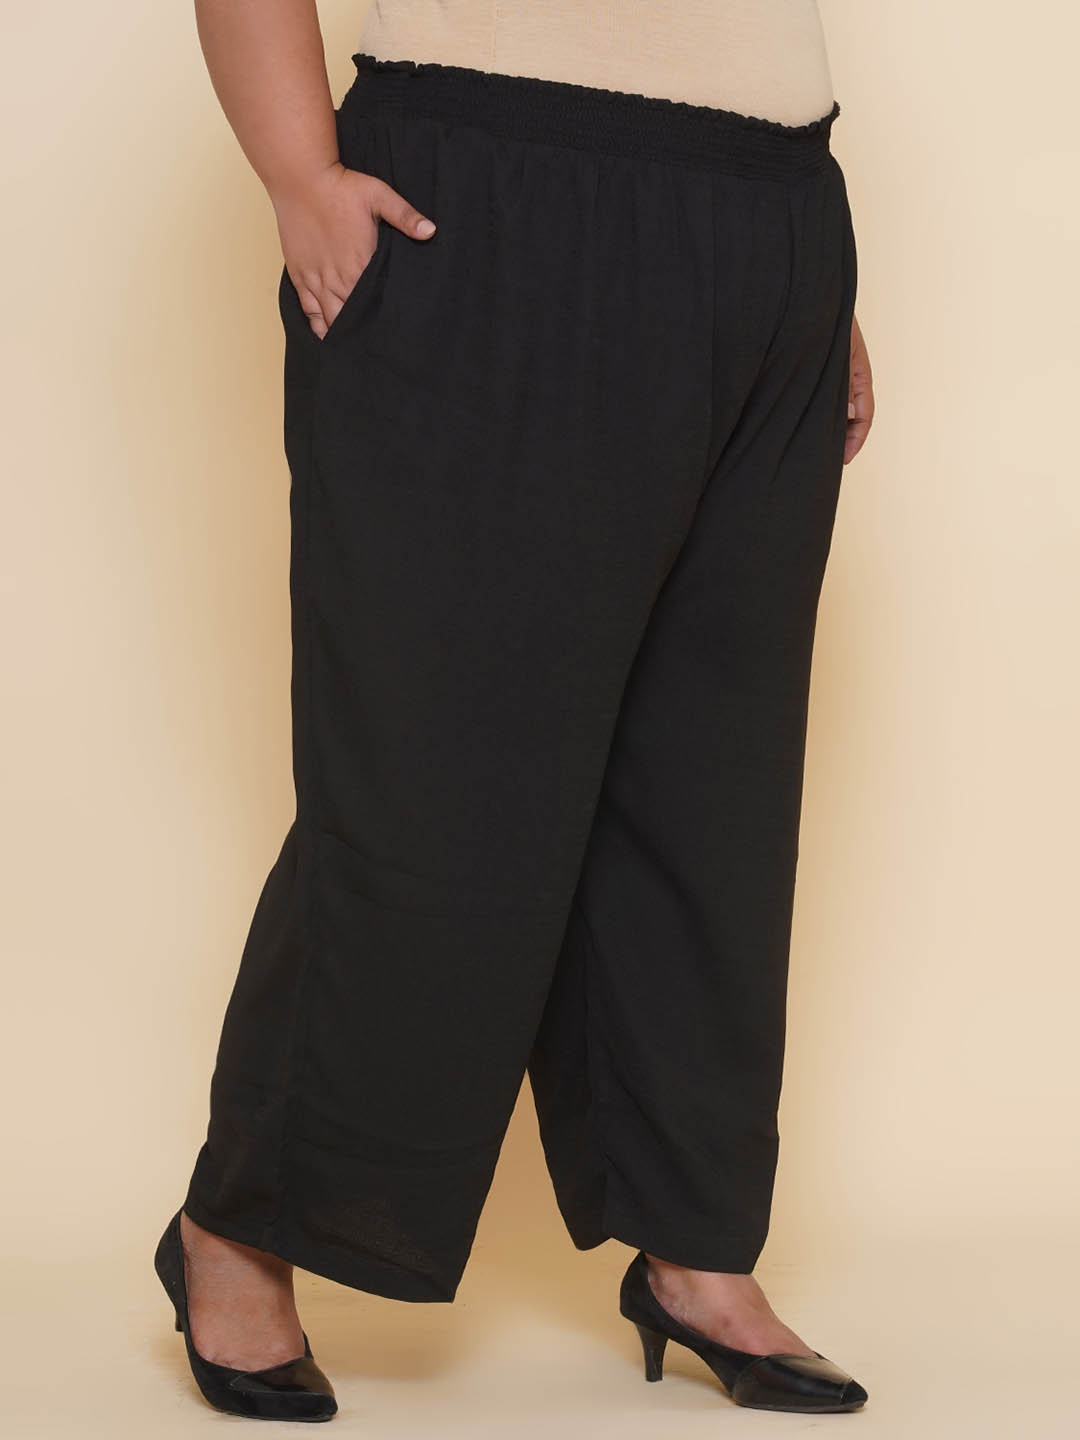 bottomwear_kiaahvi/trousers/KIPL9001/kipl9001-3.jpg